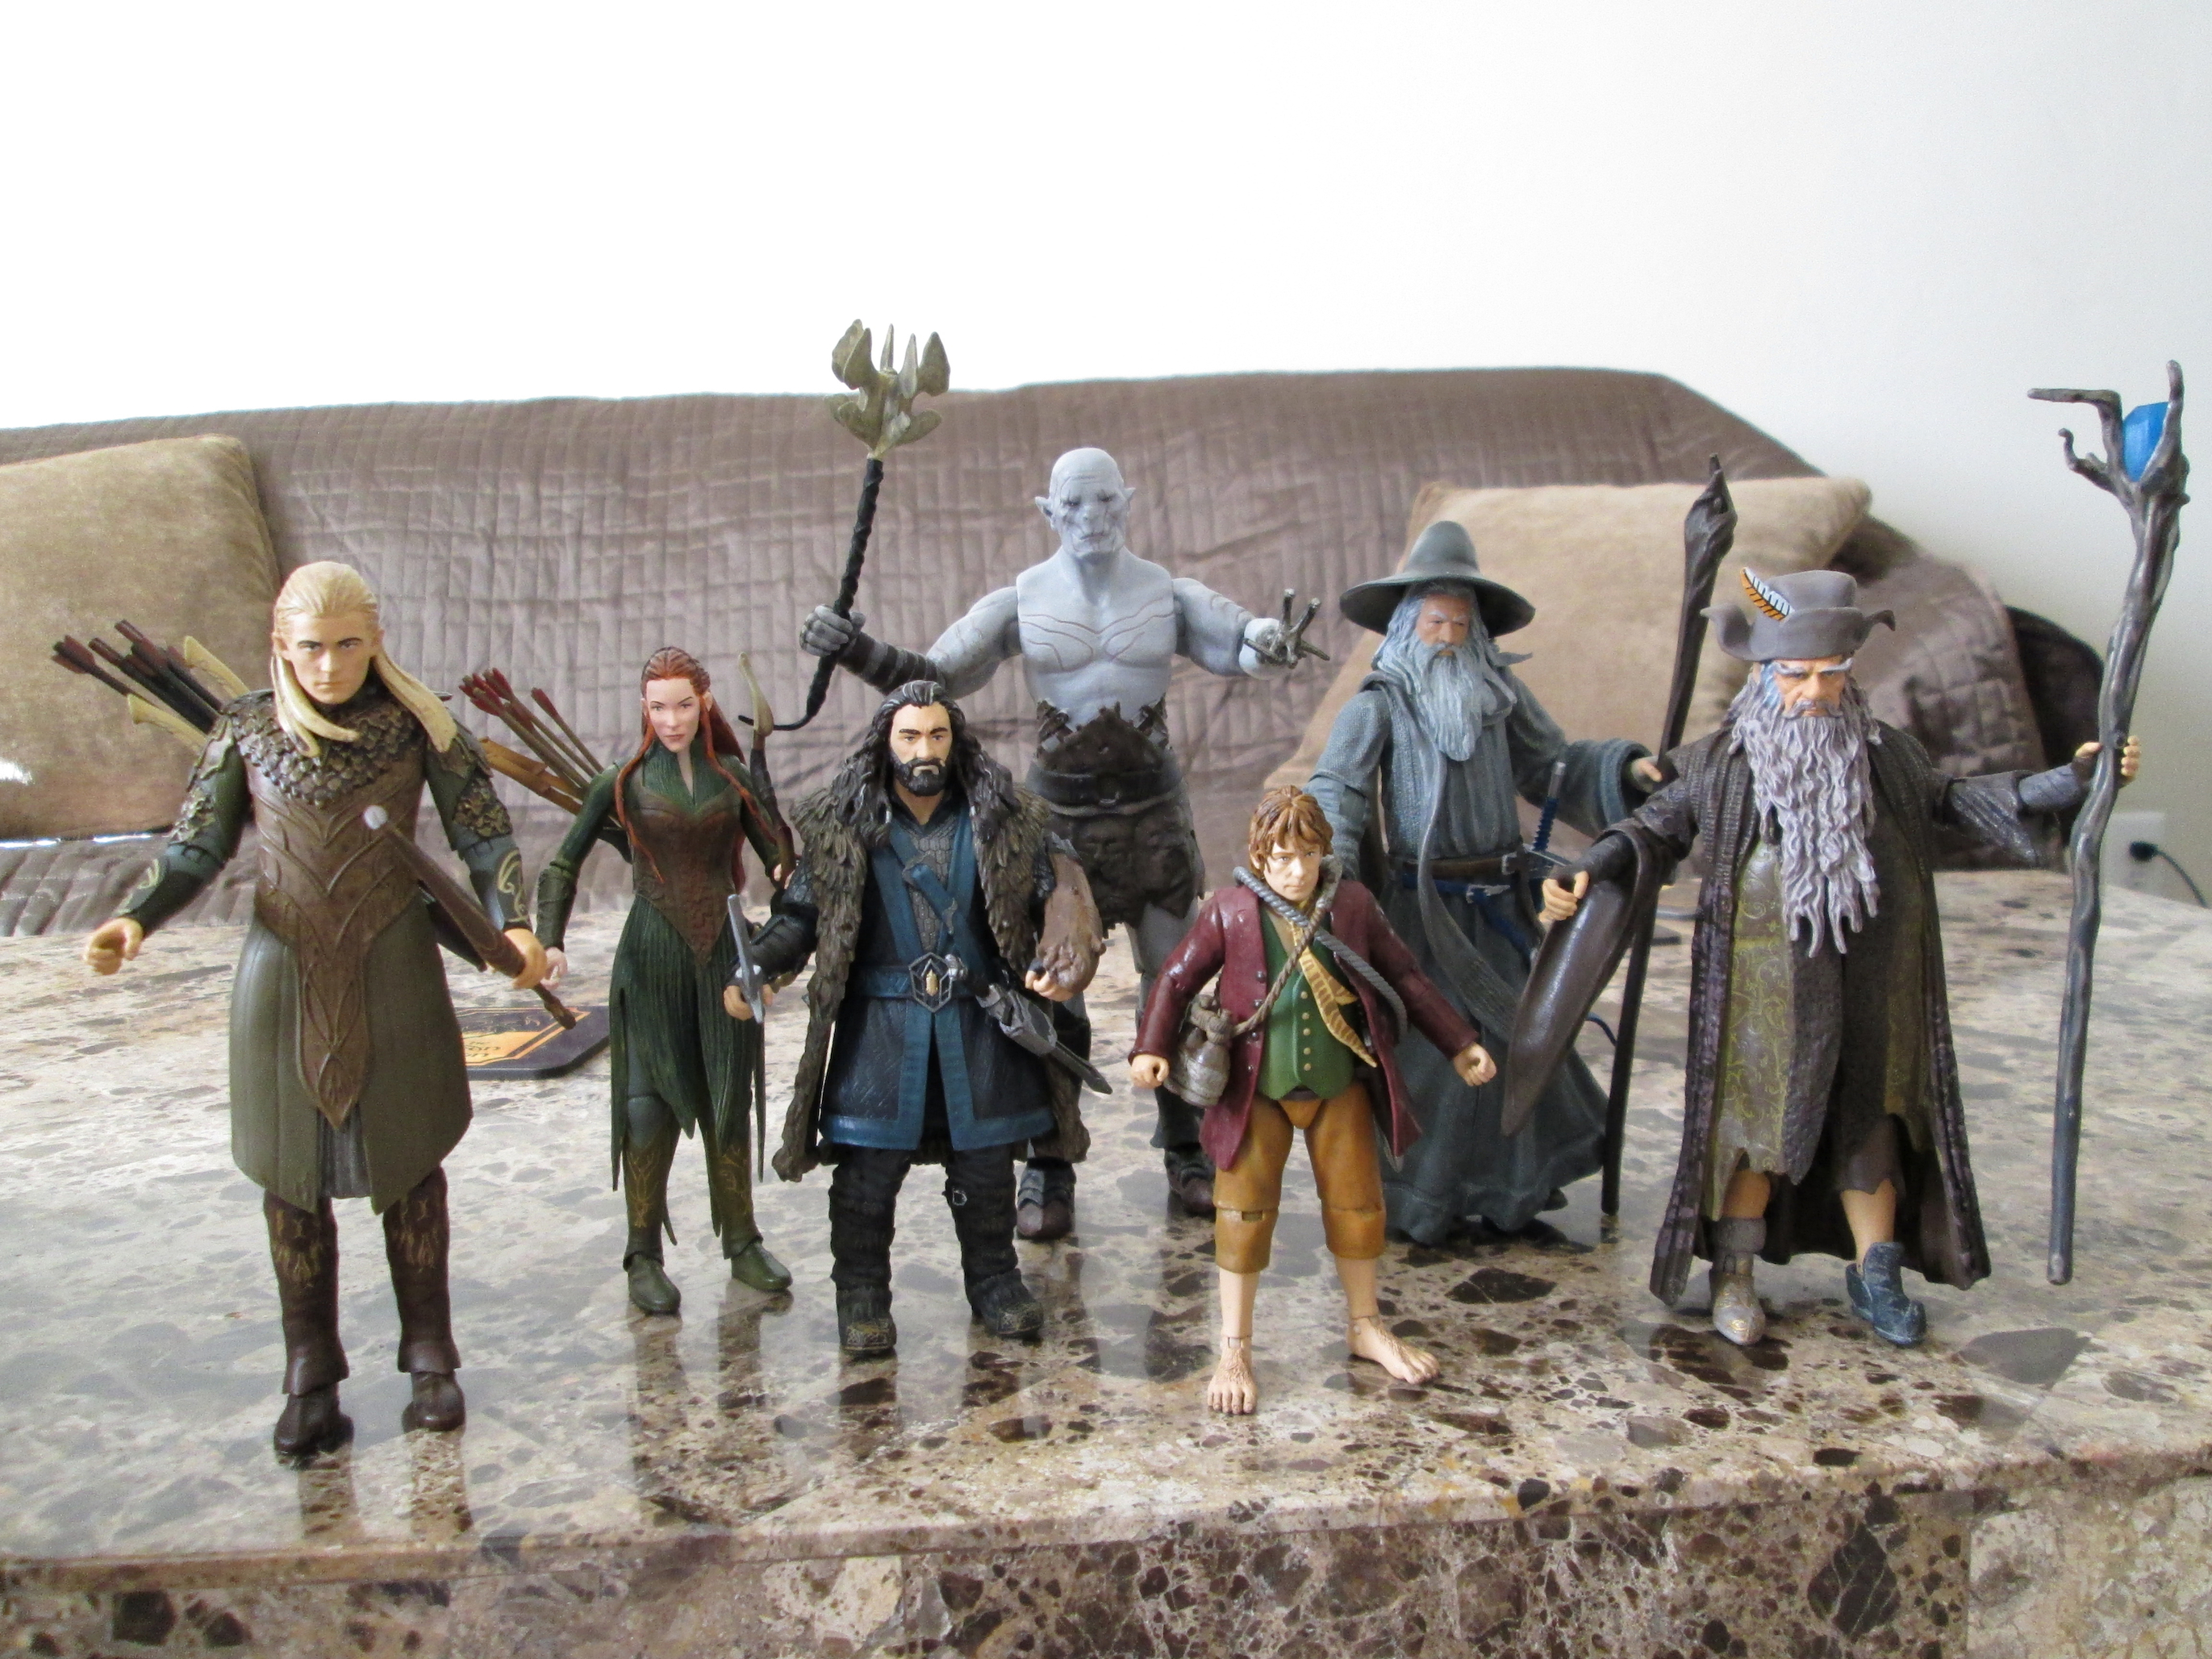 the hobbit action figures 6 inch